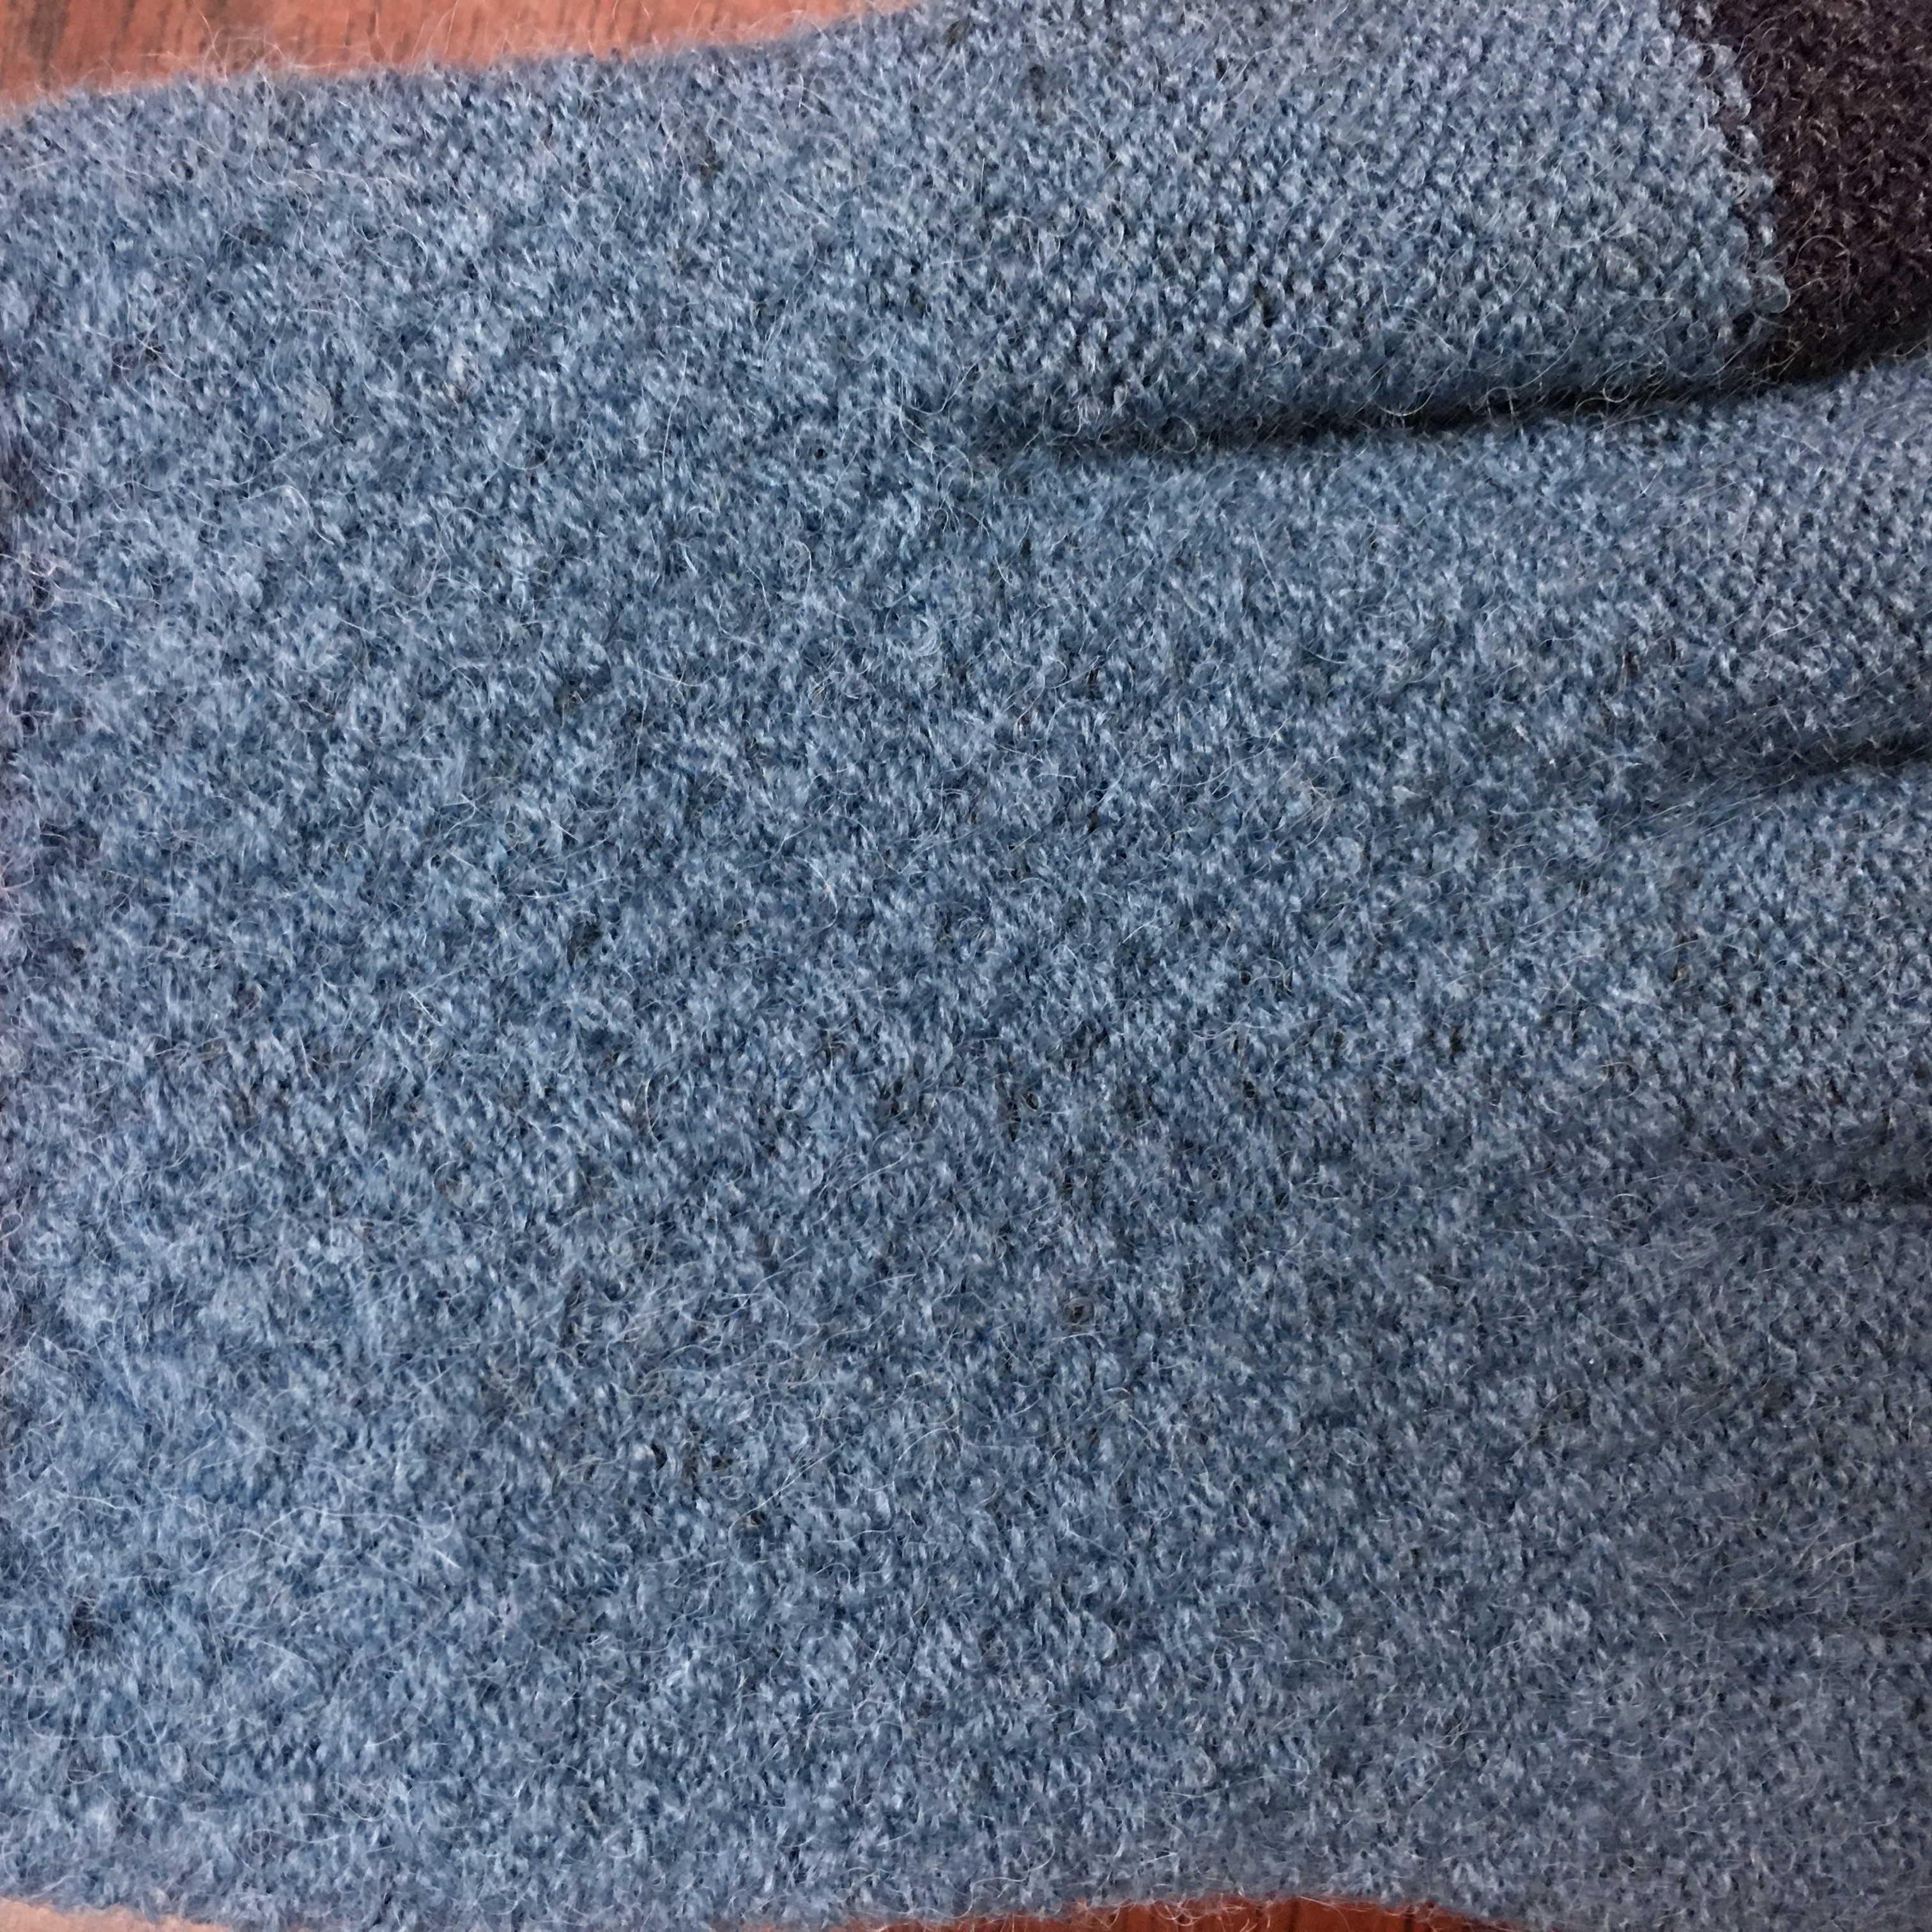 魔术手套户外运动手套触屏提手套花胶印手套冬季保暖针织毛线手套厂家产品图